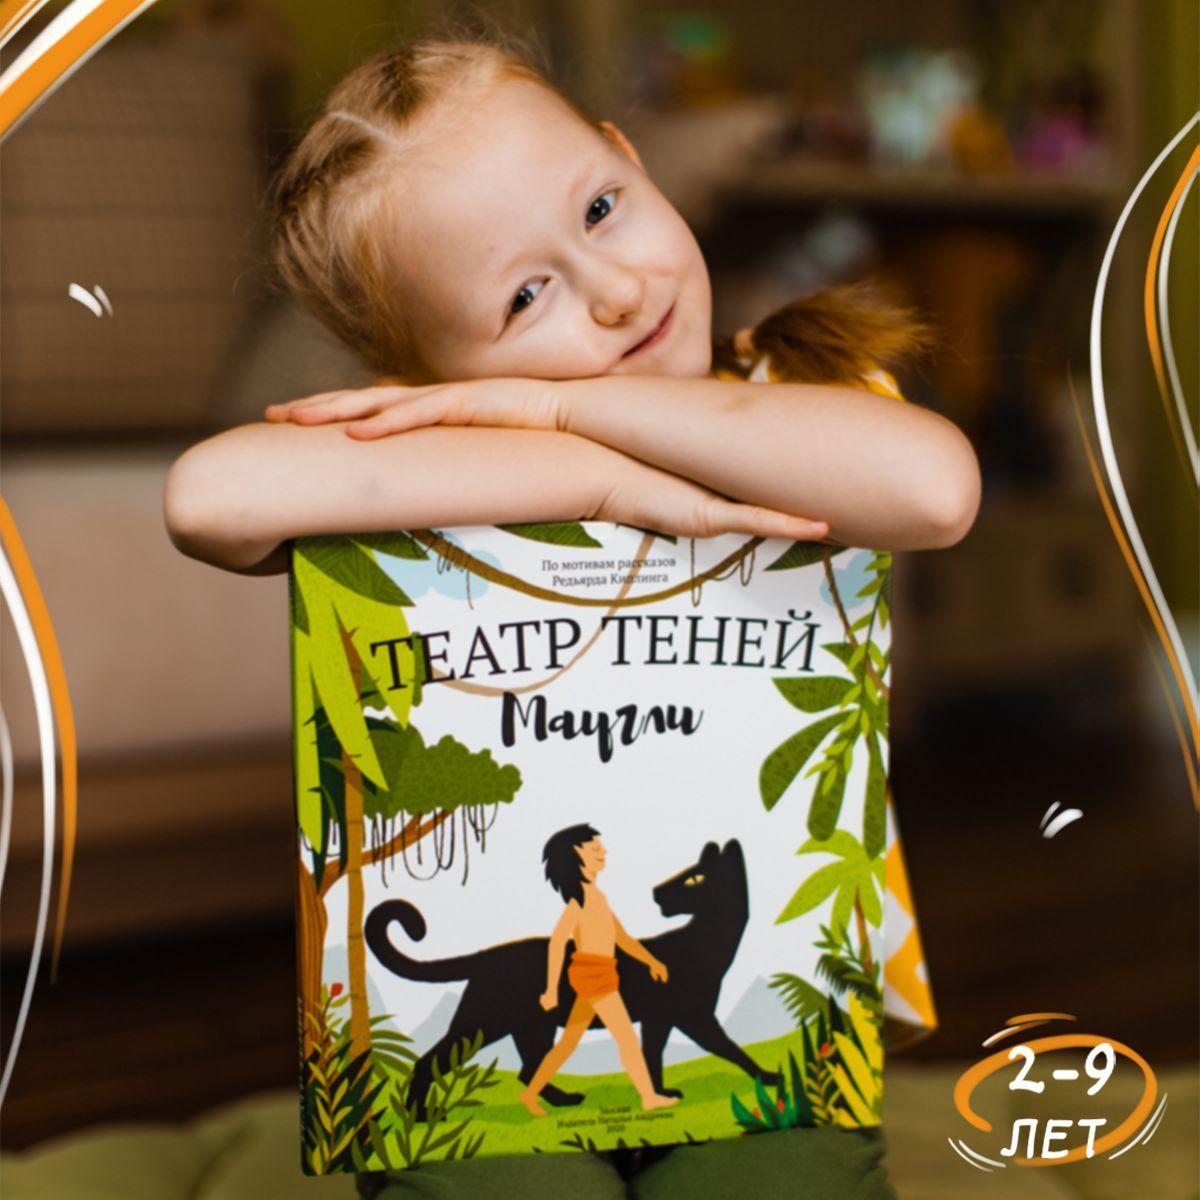 Книга для детей Театр теней SHADOW PLAY "Маугли", настольная игра для детей, подарок для девочки и мальчика | Киплинг Редьярд Джозеф